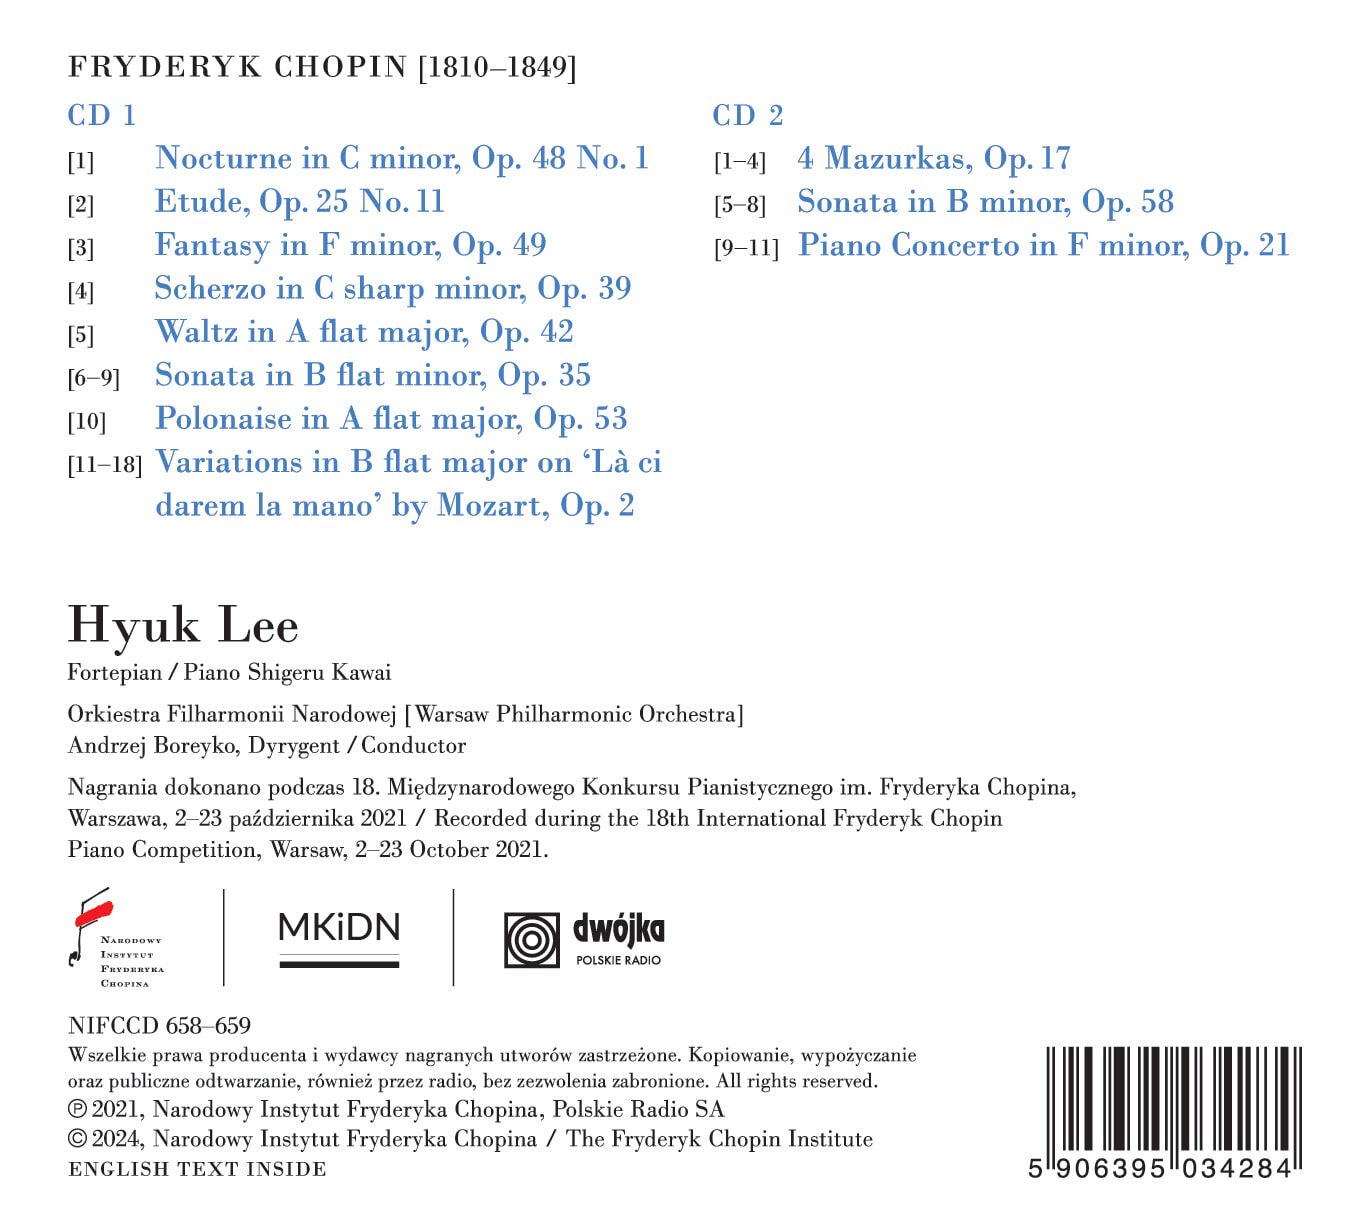 이혁 (Hyuk Lee) - 2021년 쇼팽 콩쿠르 실황 (Chopin Album 18th International Fryderyk Chopin Piano Competition, 2021)